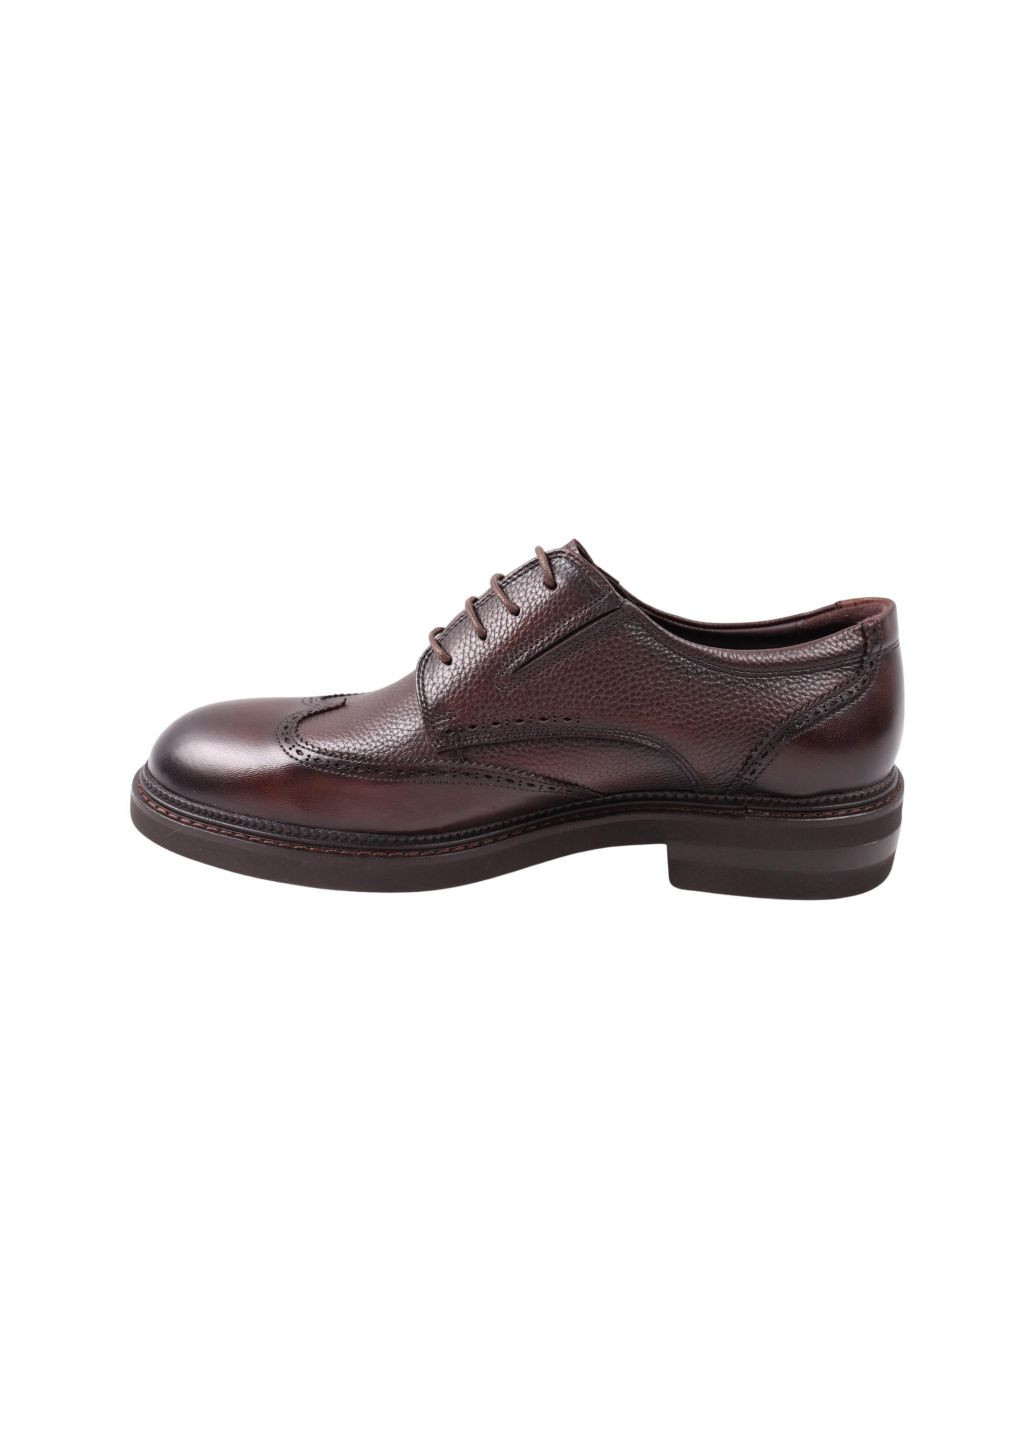 Туфлі чоловічі Lido Marinozi коричневі натуральна шкіра Lido Marinozzi 308-23dt (261856731)